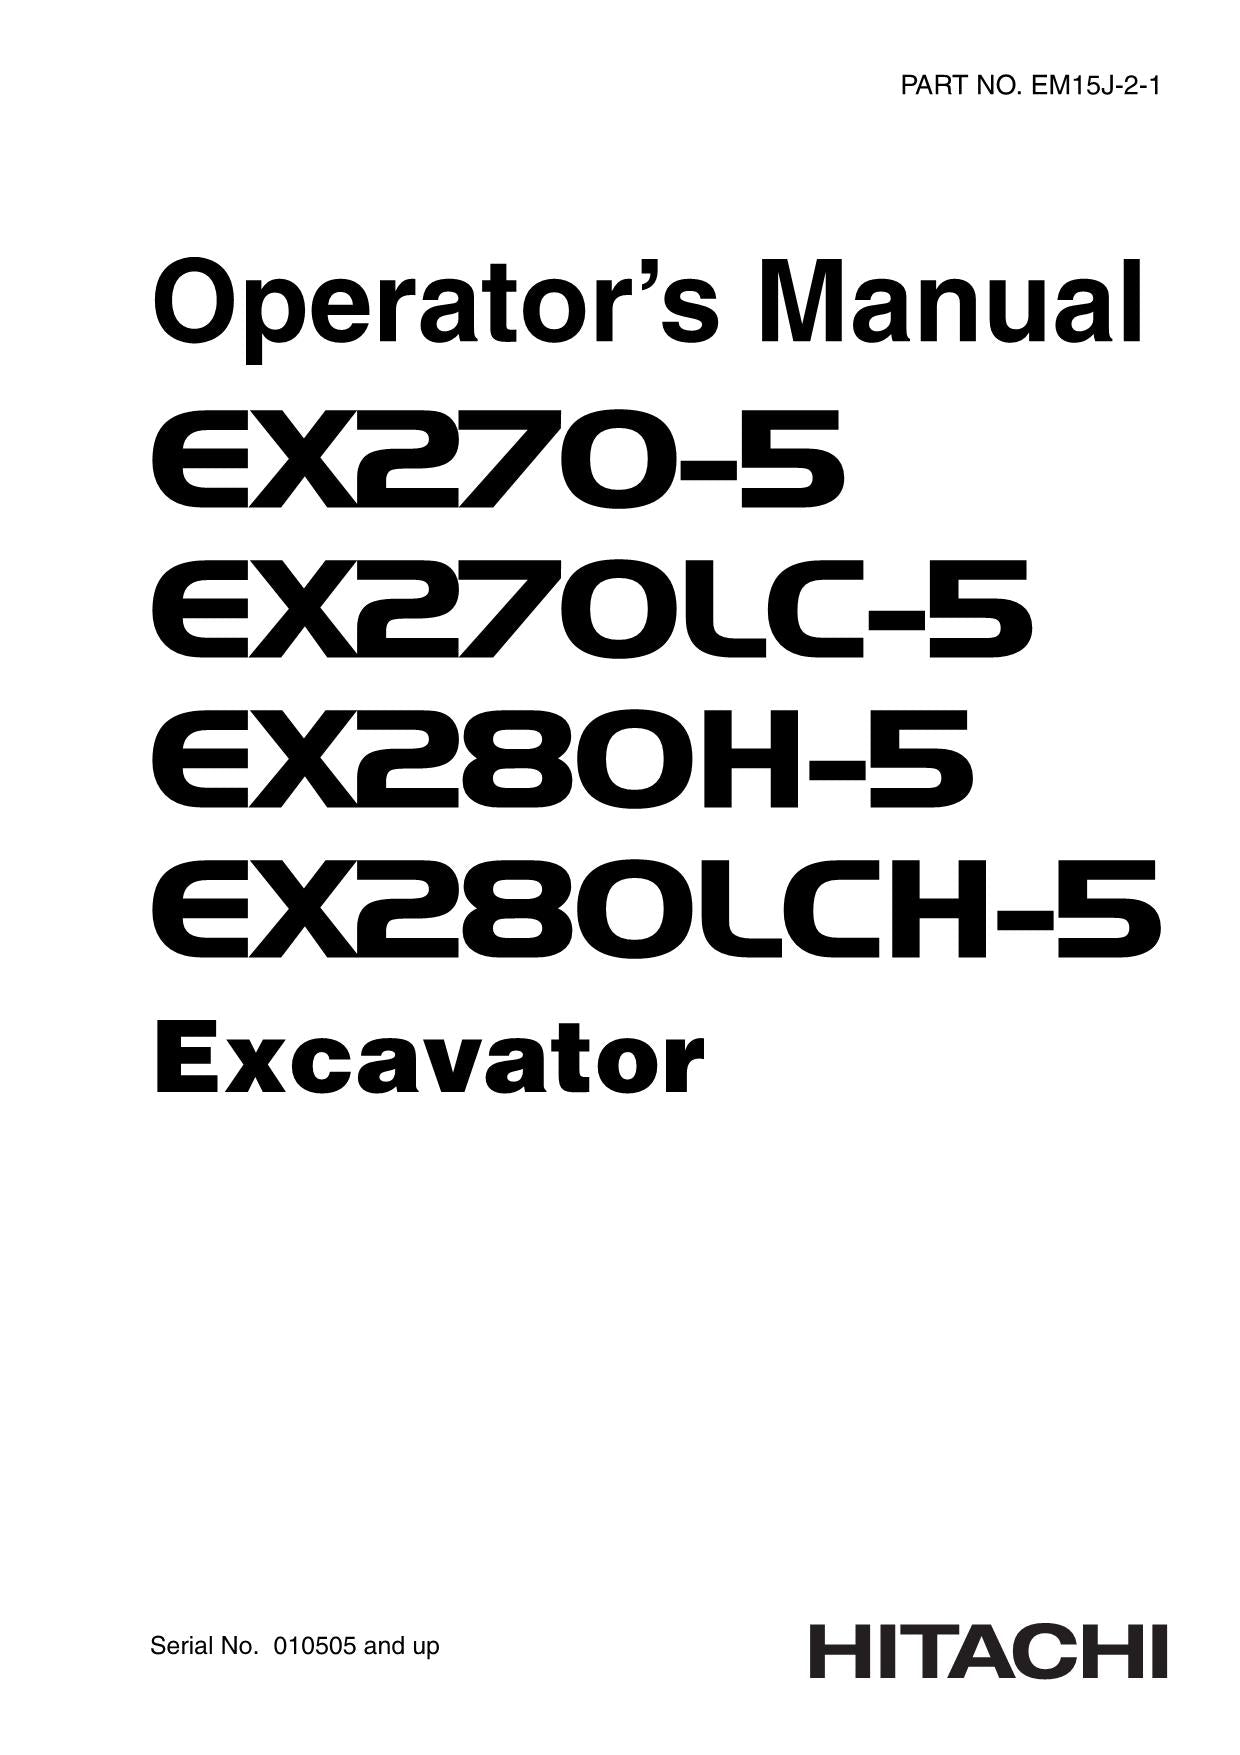 HITACHI EX270-5 EX270LC-5 EX280H-5 EX280HLC-5 EXCAVATOR OPERATORS MANUAL